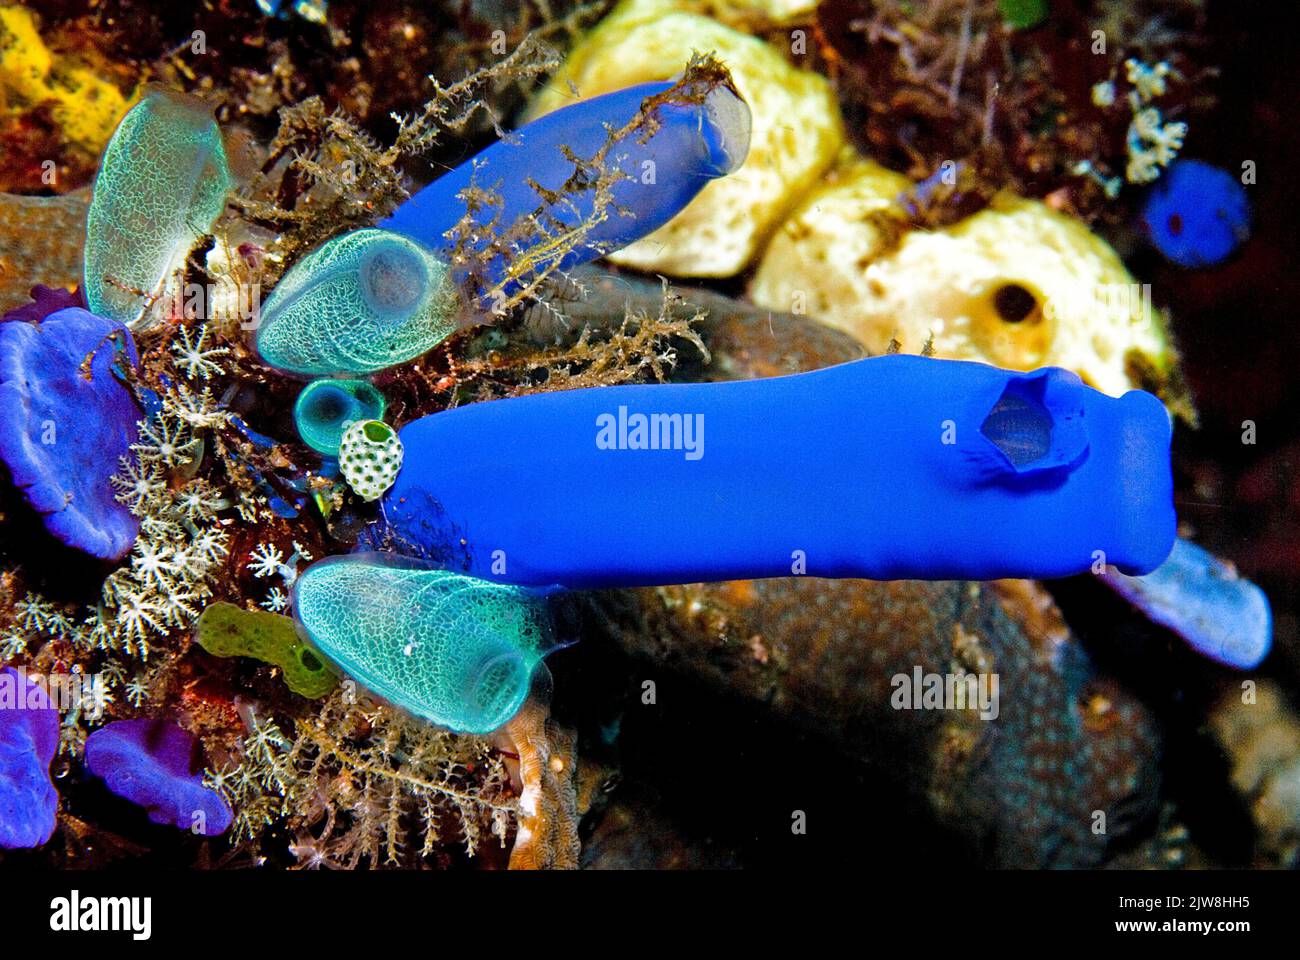 Blue Sea squirt (Rhopalaea sp.), colonia di squirt marine in una barriera corallina, Thailandia, Mare delle Andamane, Asia Foto Stock